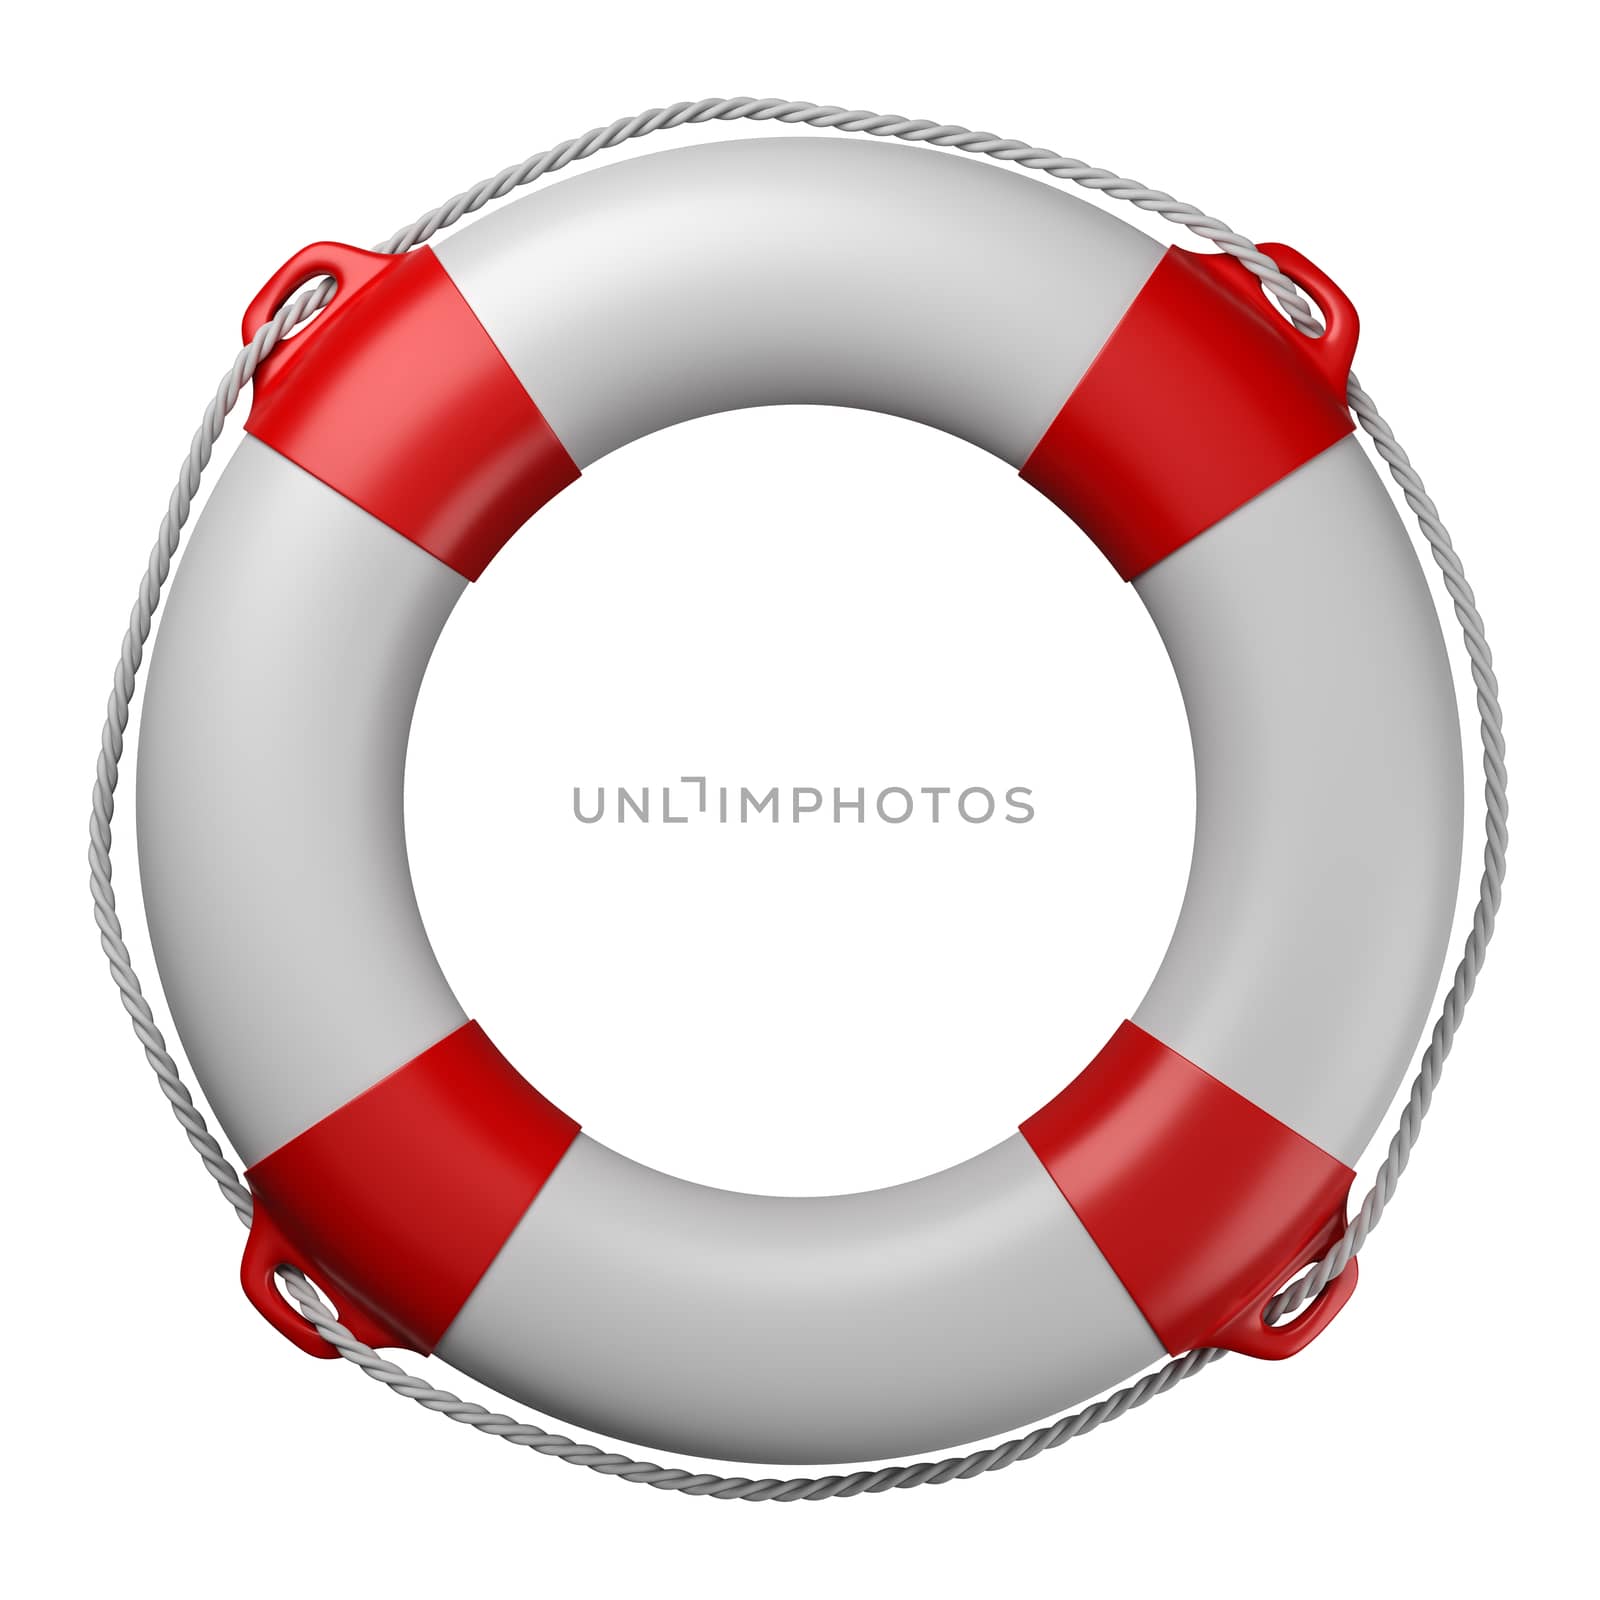 Lifebuoy Isolated on White Background 3D Illustration